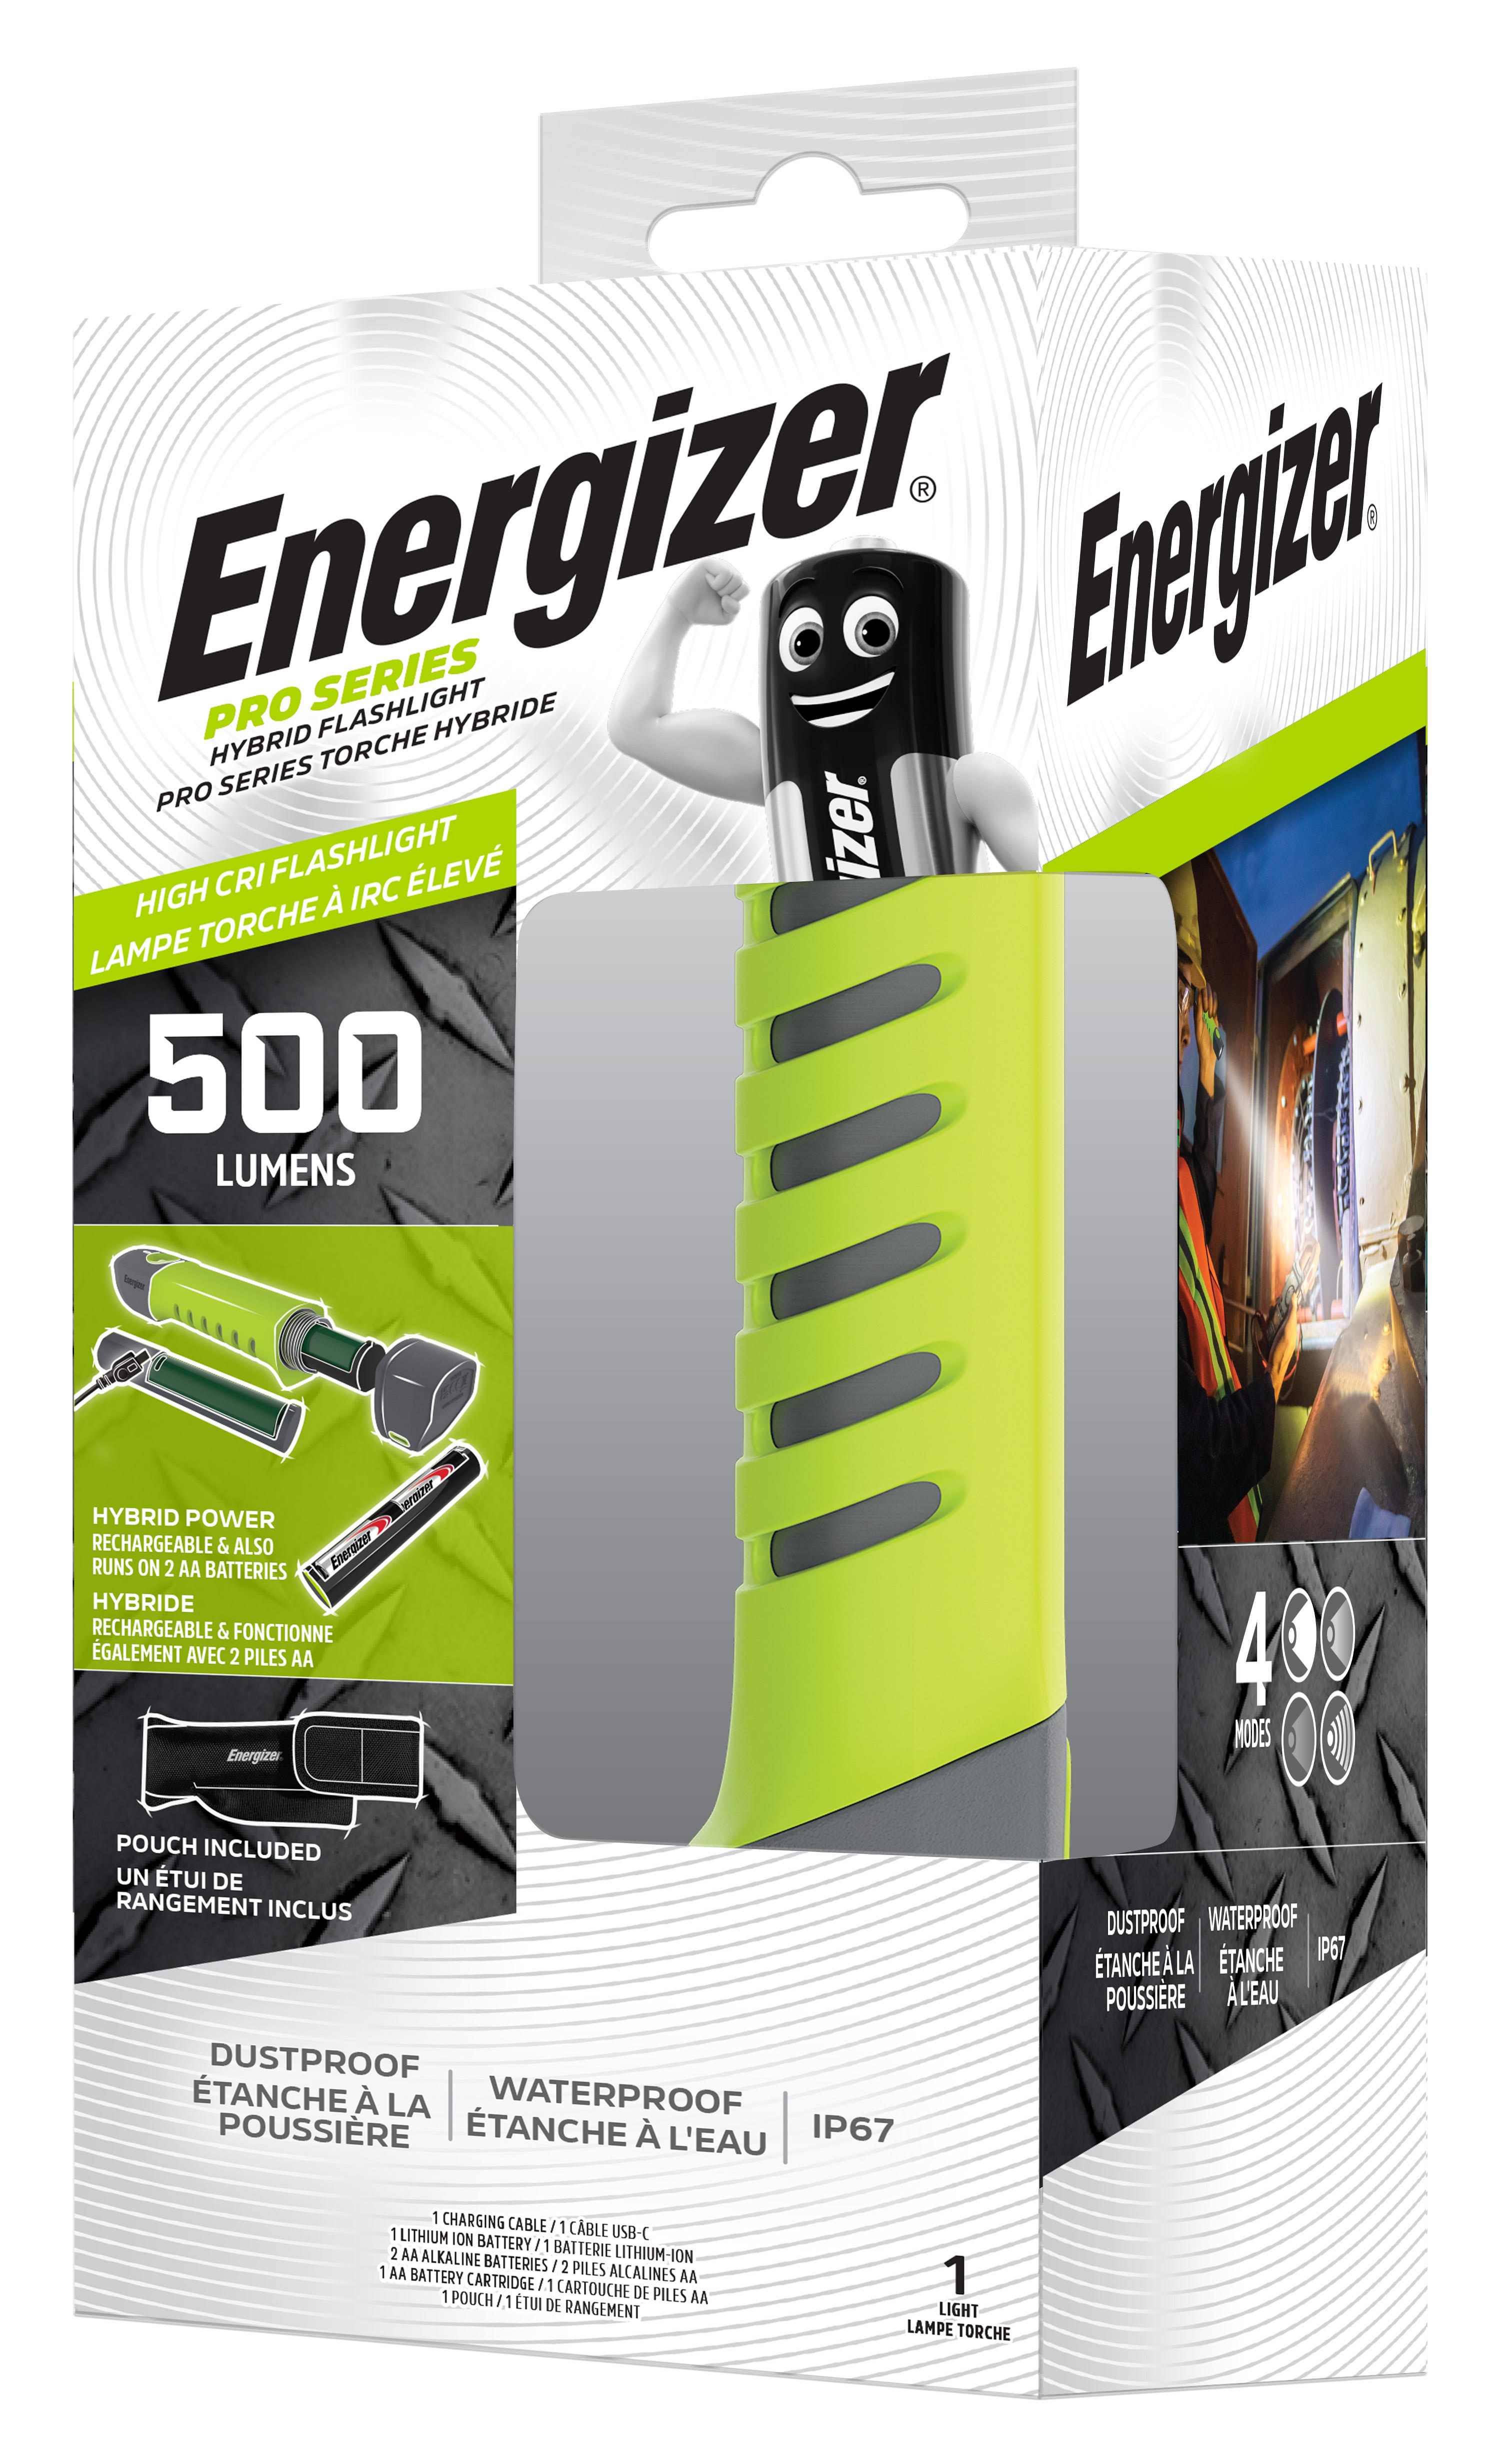 Energizer - Torche ProSeries Hybride pour un usage professionnel